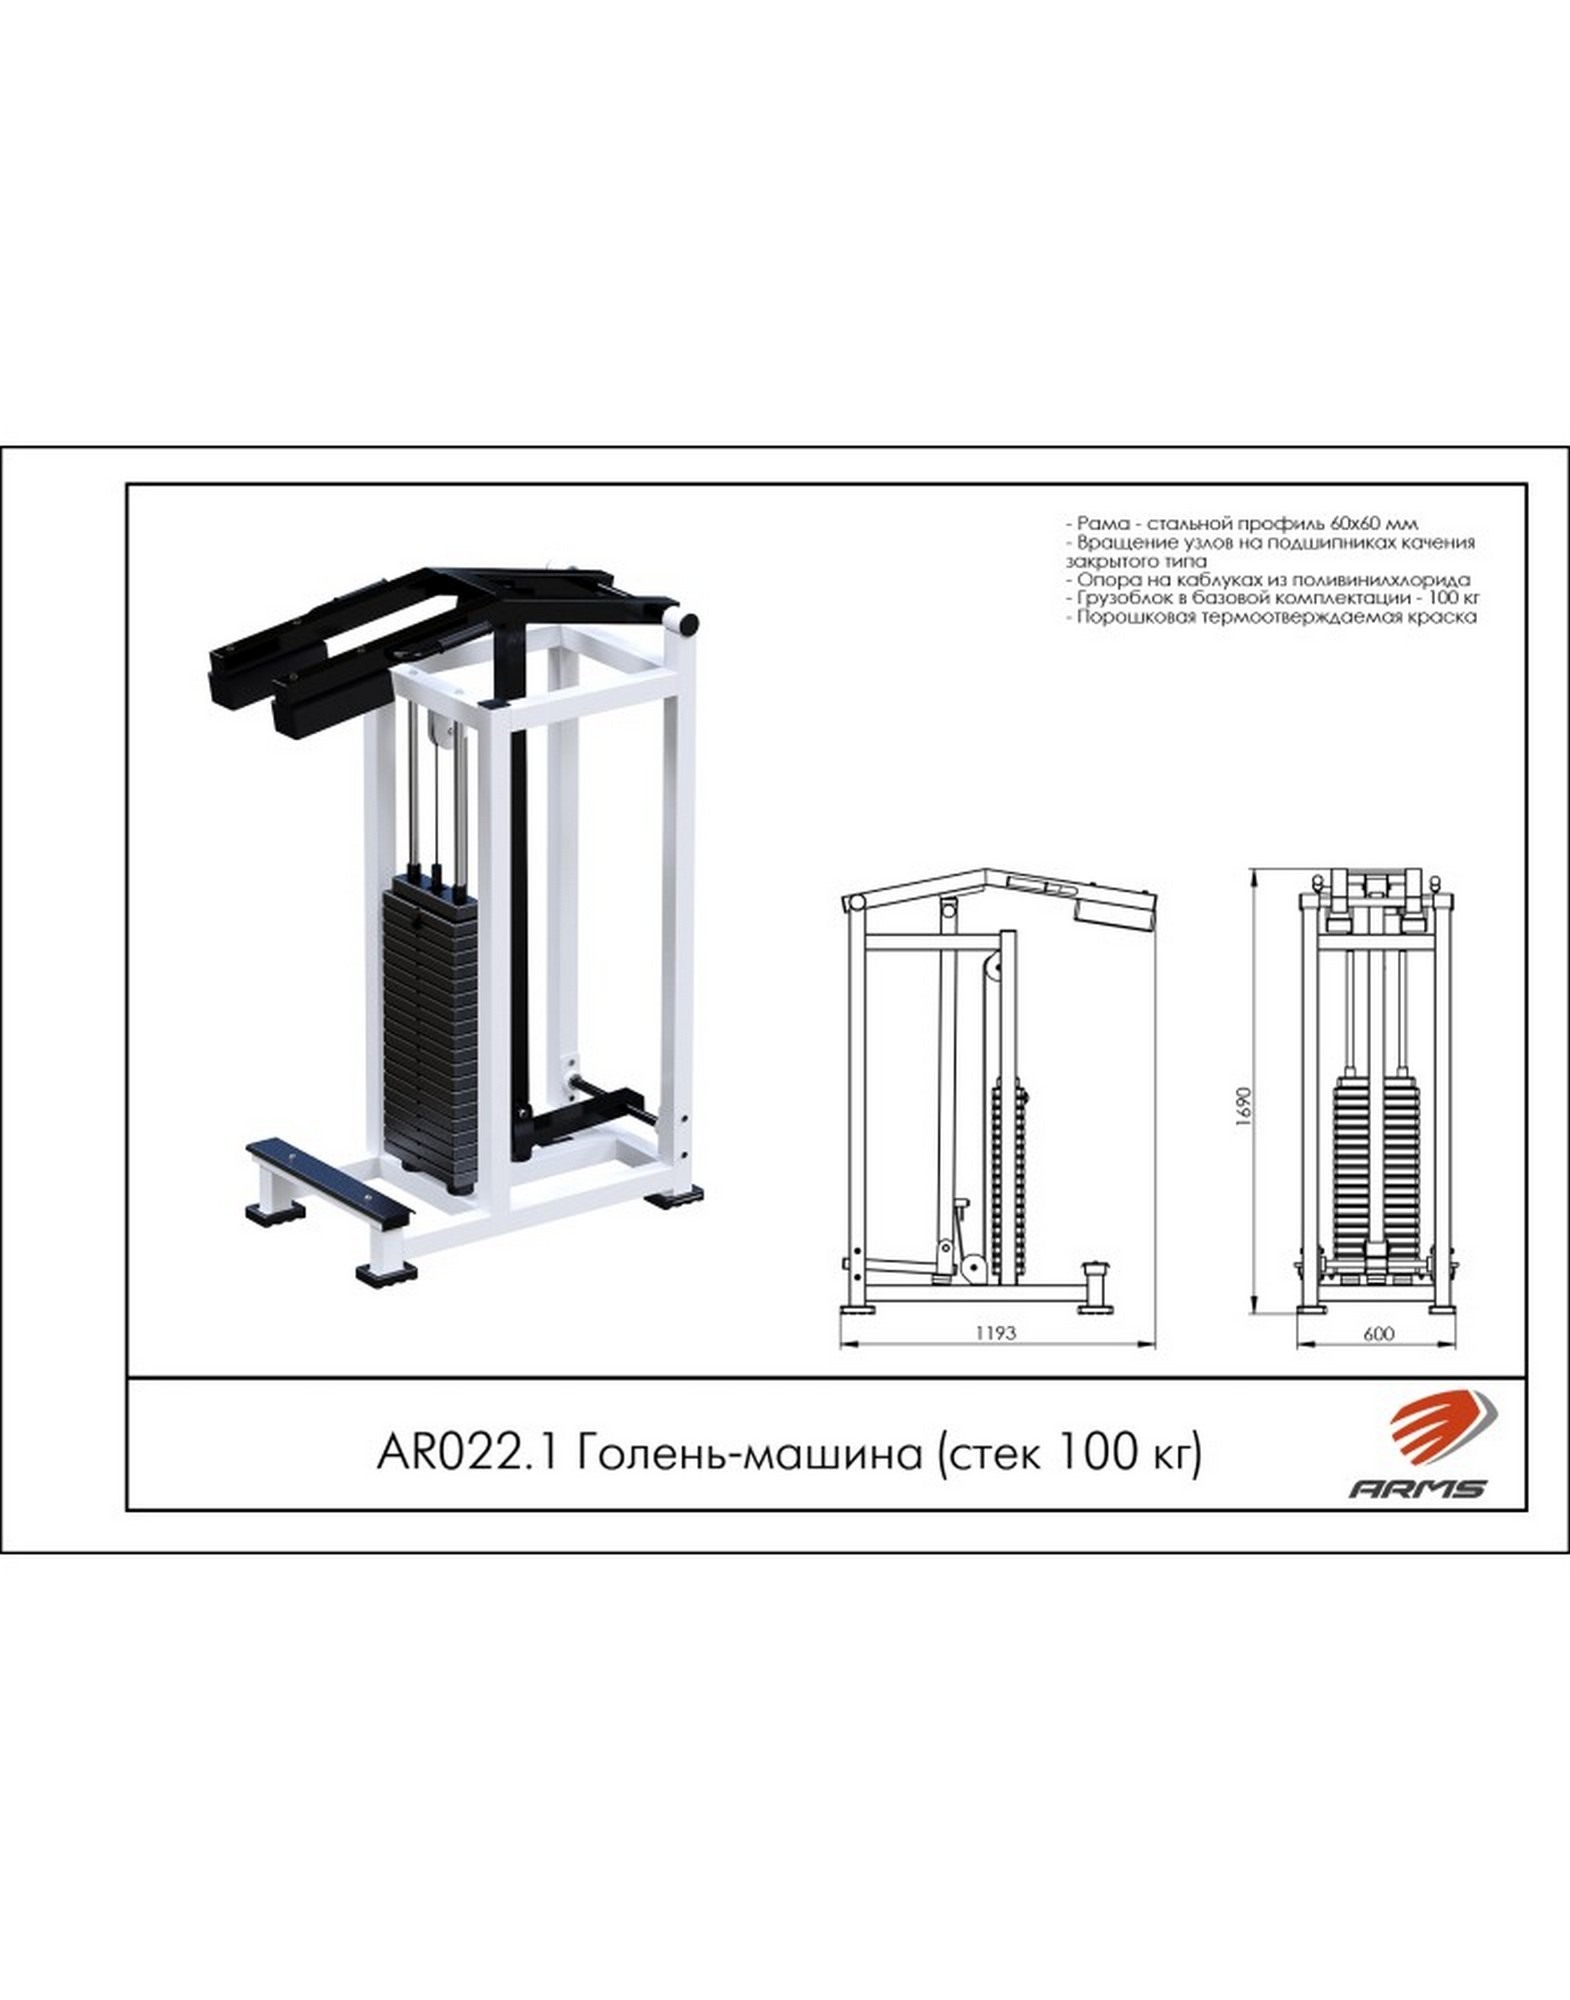 Голень-машина ARMS (стек 100кг) AR022.1 1570_2000